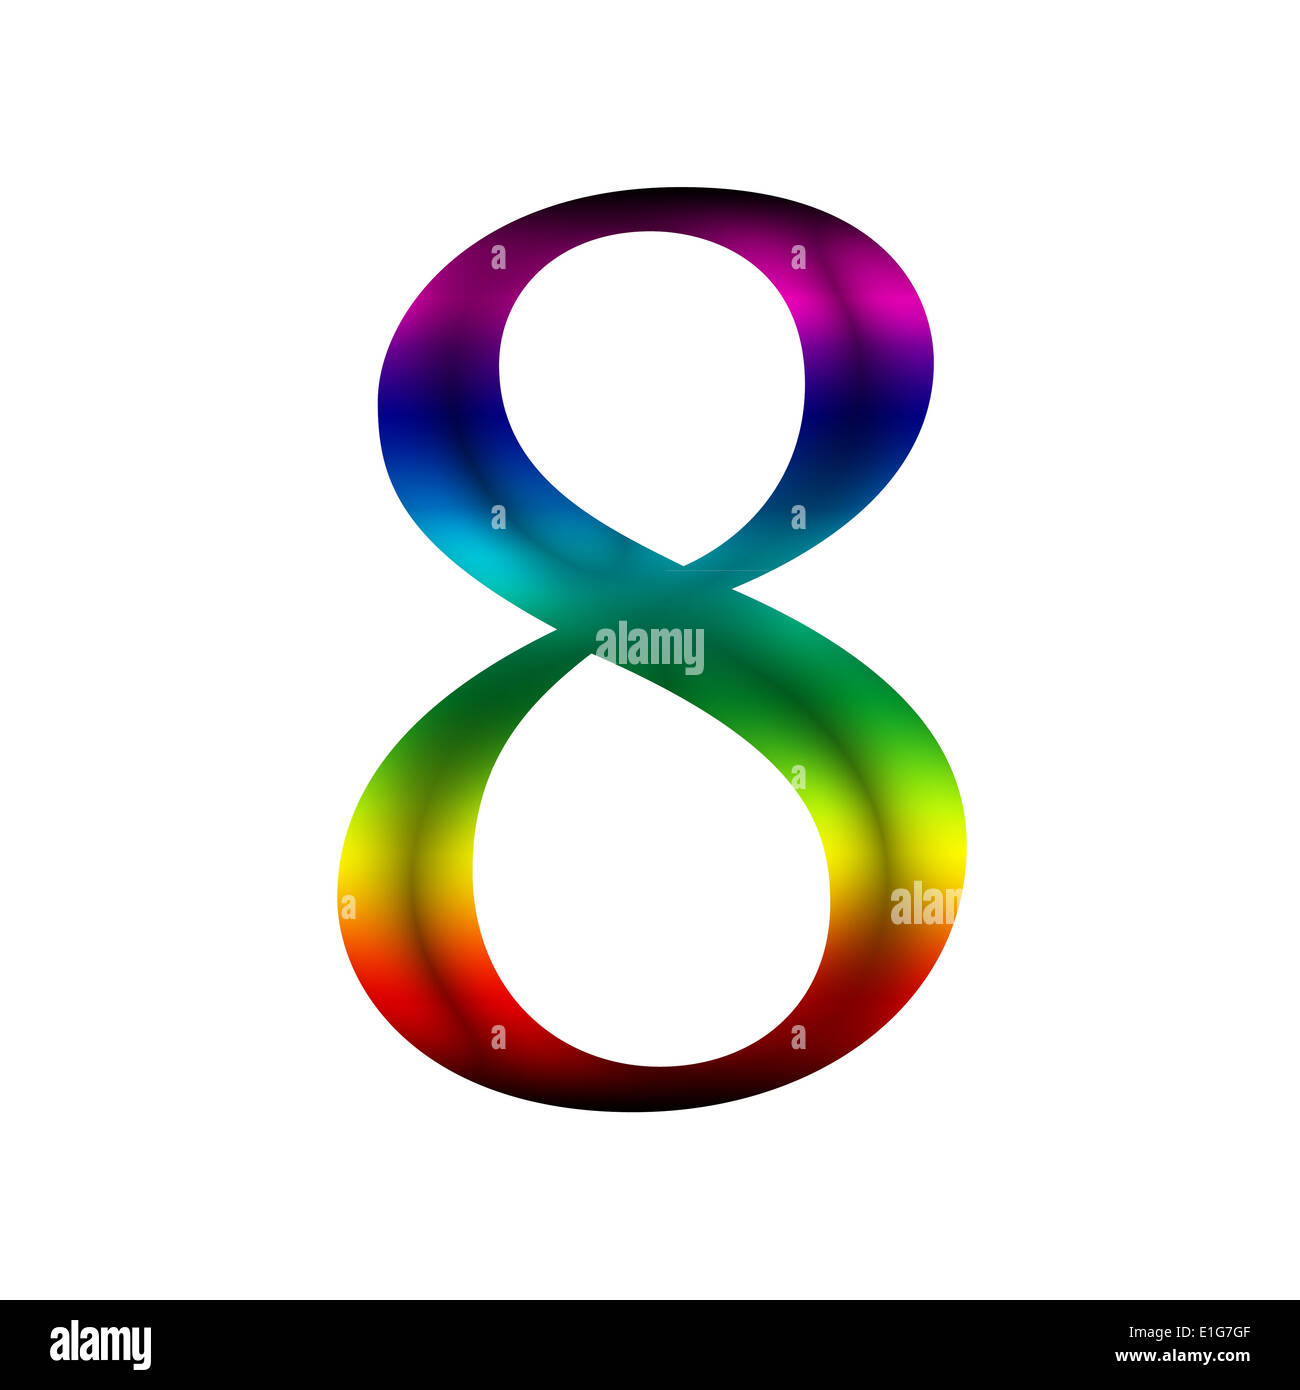 https://c8.alamy.com/comp/E1G7GF/number-eight-8-made-from-rainbow-color-E1G7GF.jpg